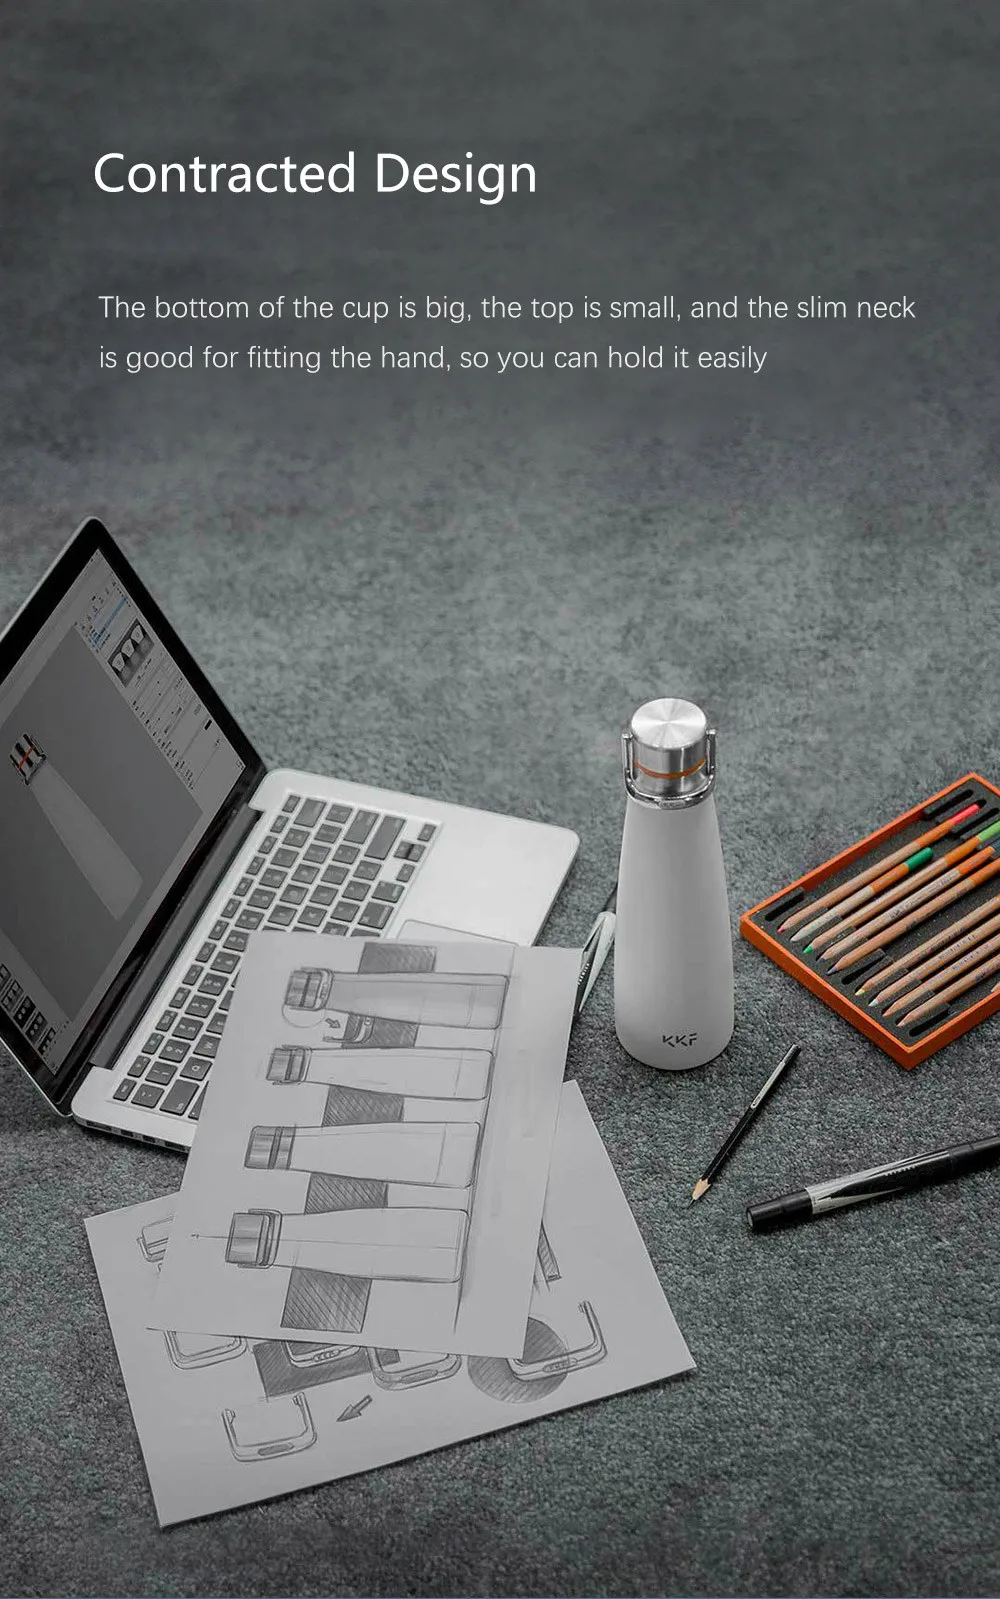 Вакуумная бутылка Xiaomi KKF, термосы с изоляцией 24 h, термос из нержавеющей стали, Спортивная кружка для путешествий, 475 мл, чашка с OLED температурой